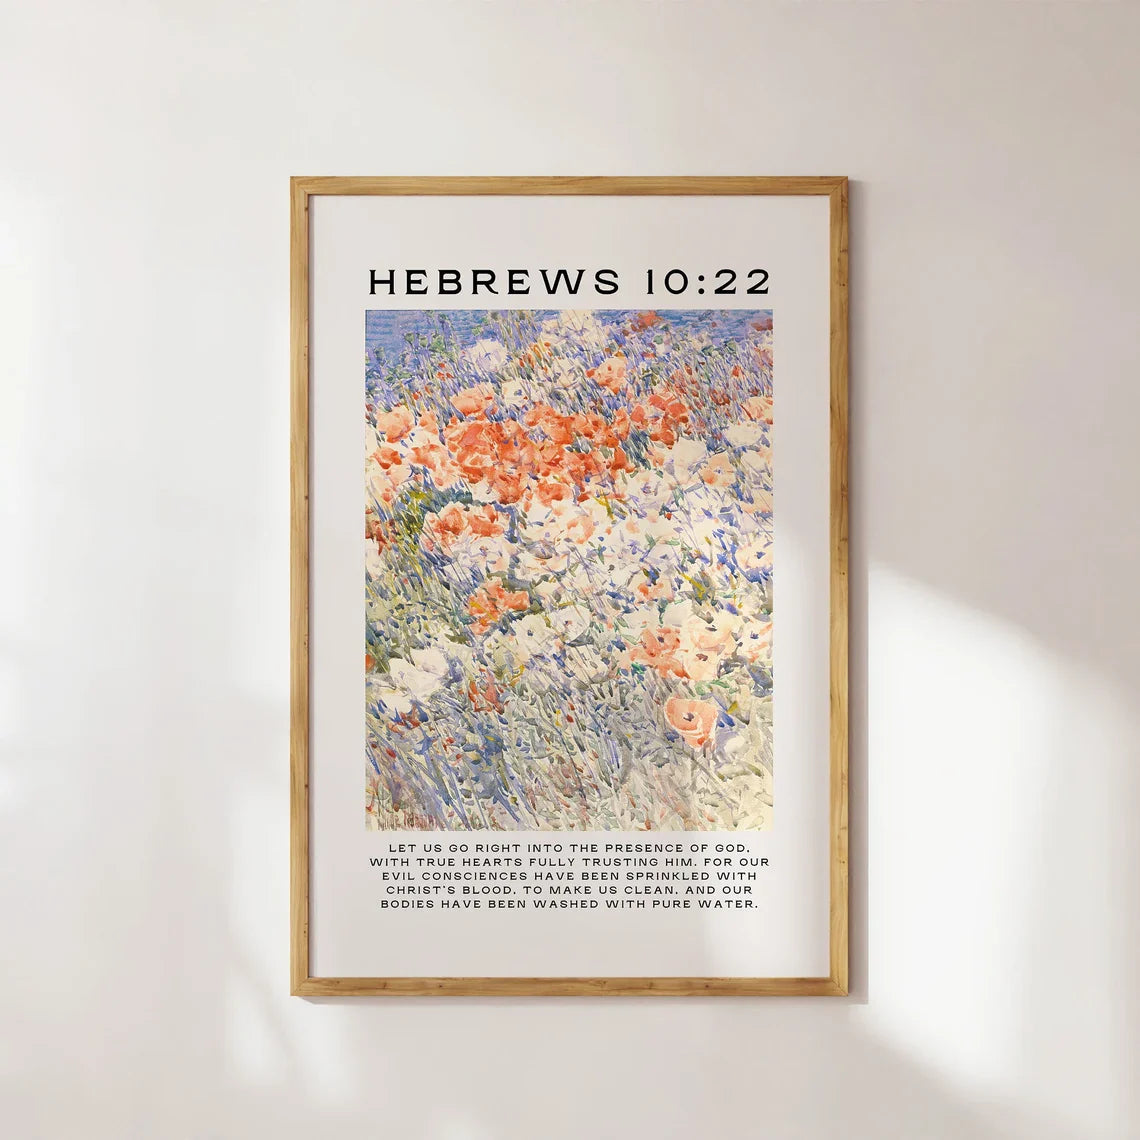 Hebrews 10:22